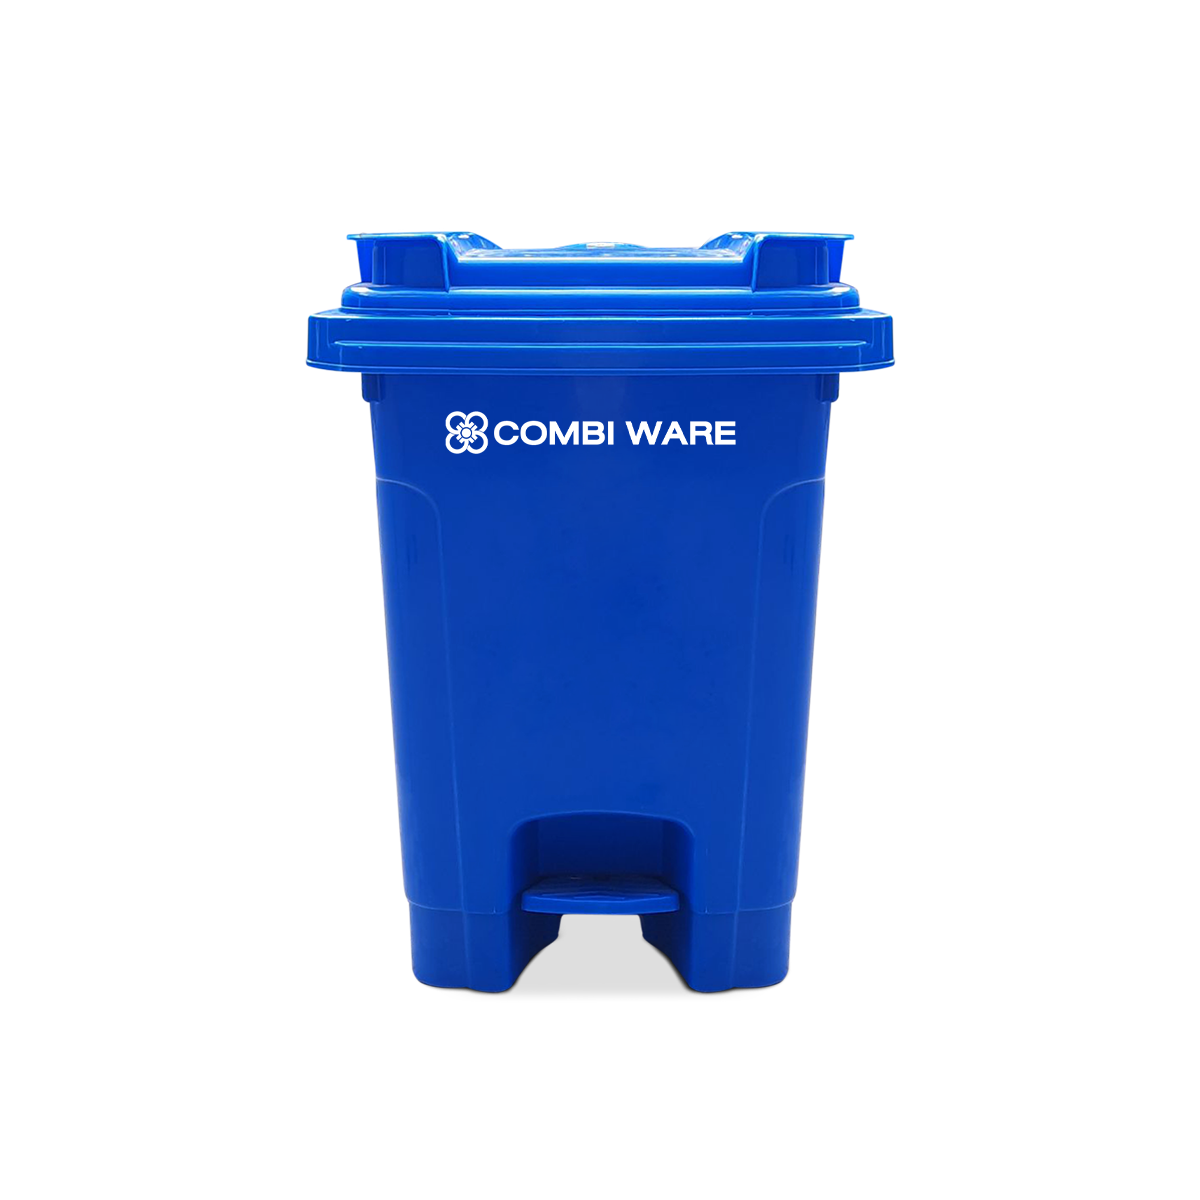 ถังขยะพลาสติก ขนาด 60 ลิตร แบบมีเท้าเหยียบ สีน้ำเงิน